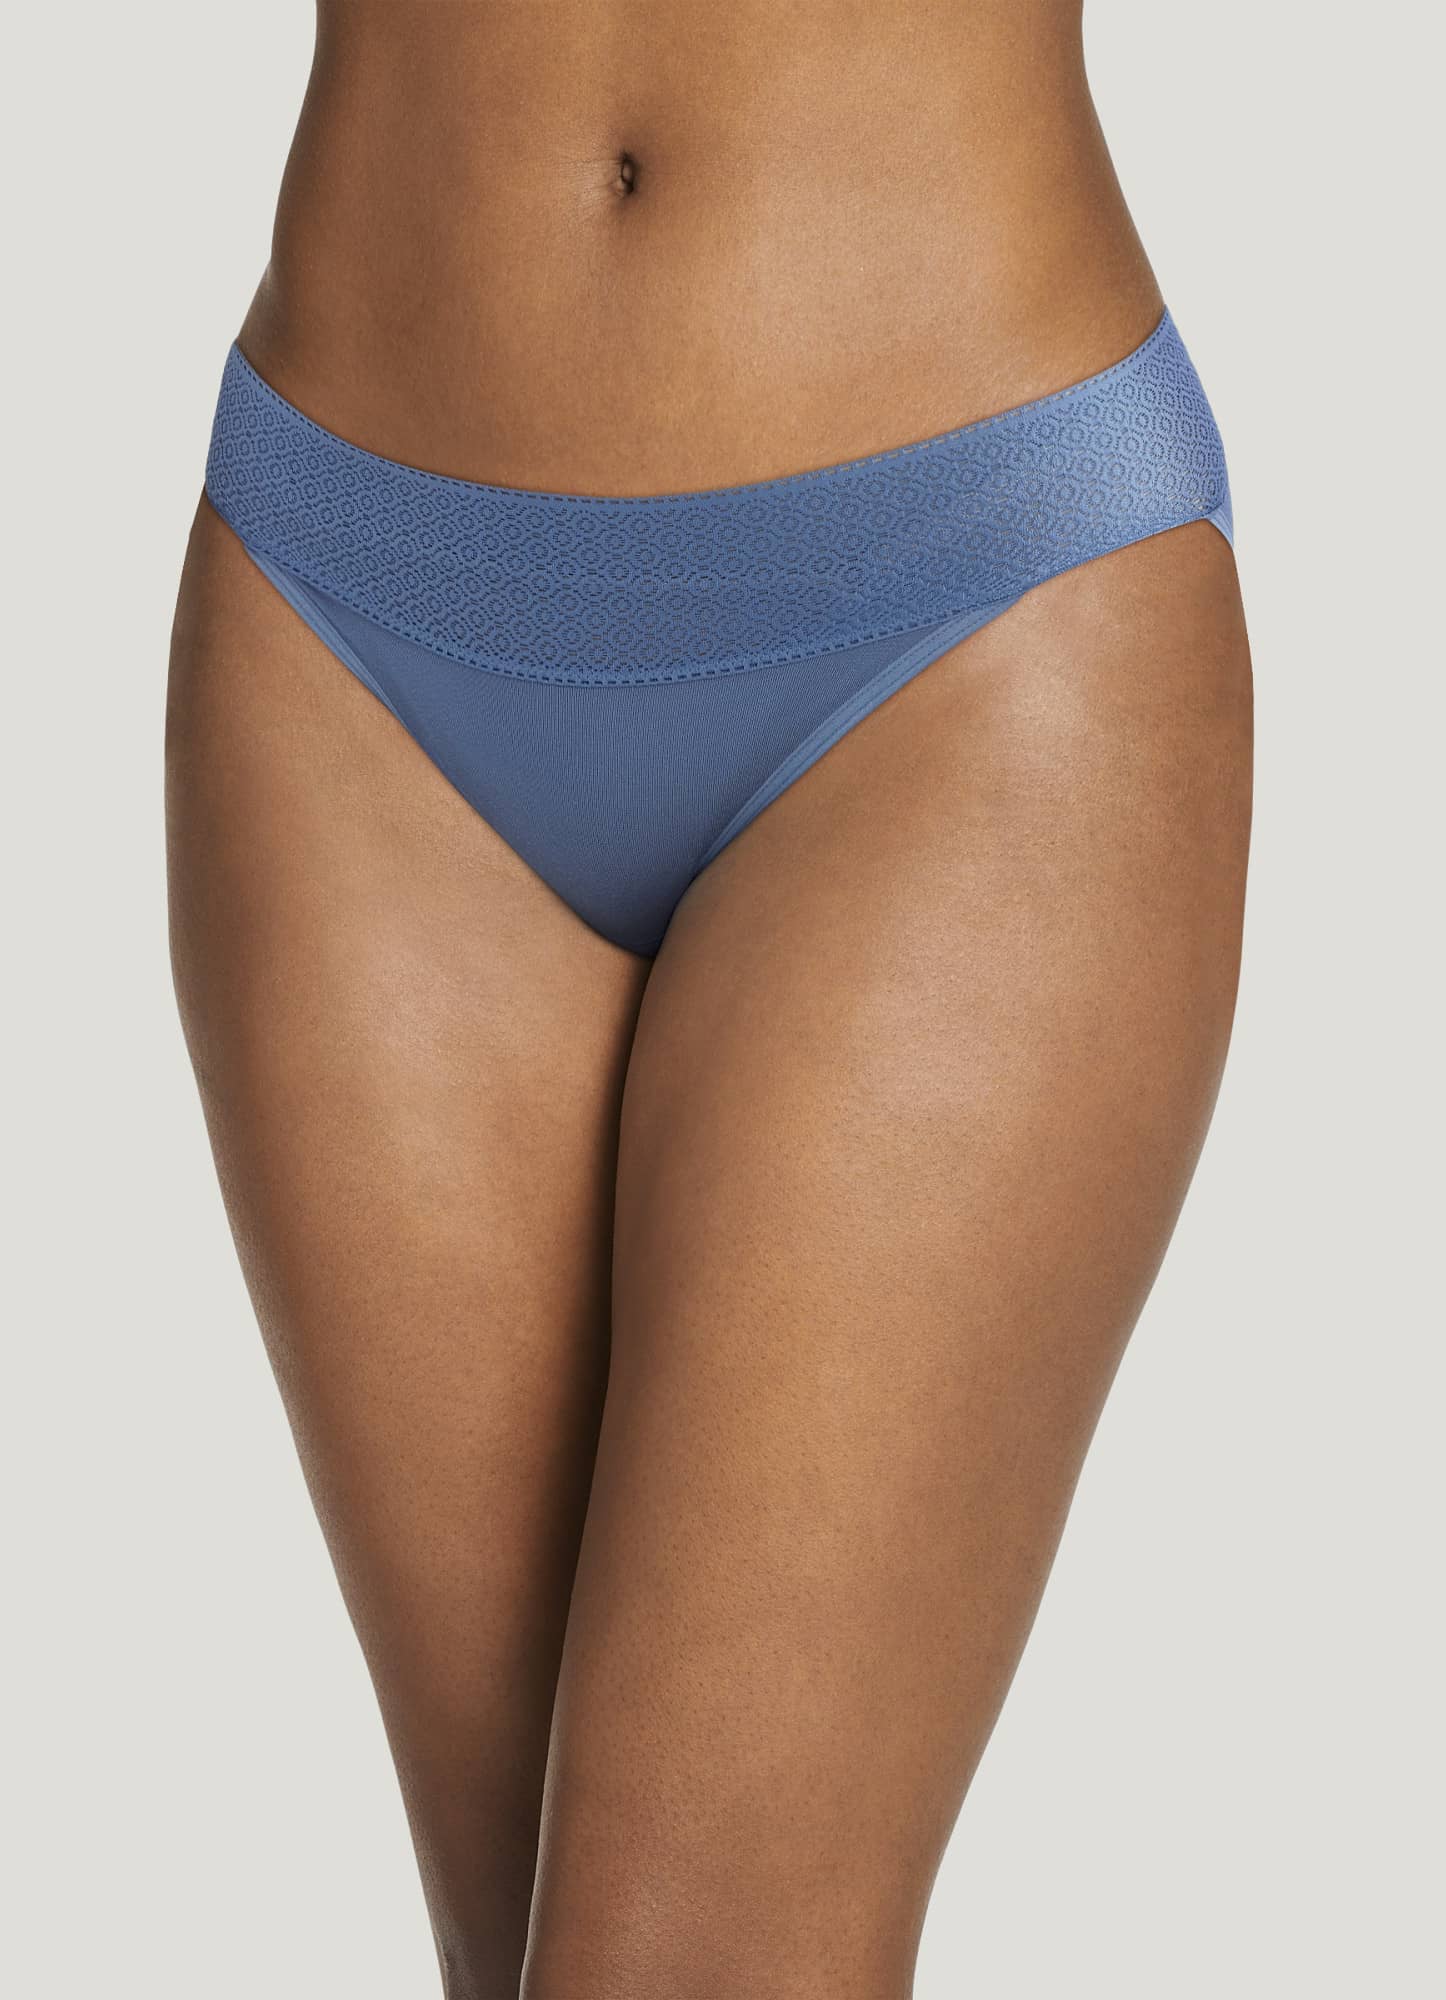 Personalized Womens Underwear & Lingerie – Super Socks